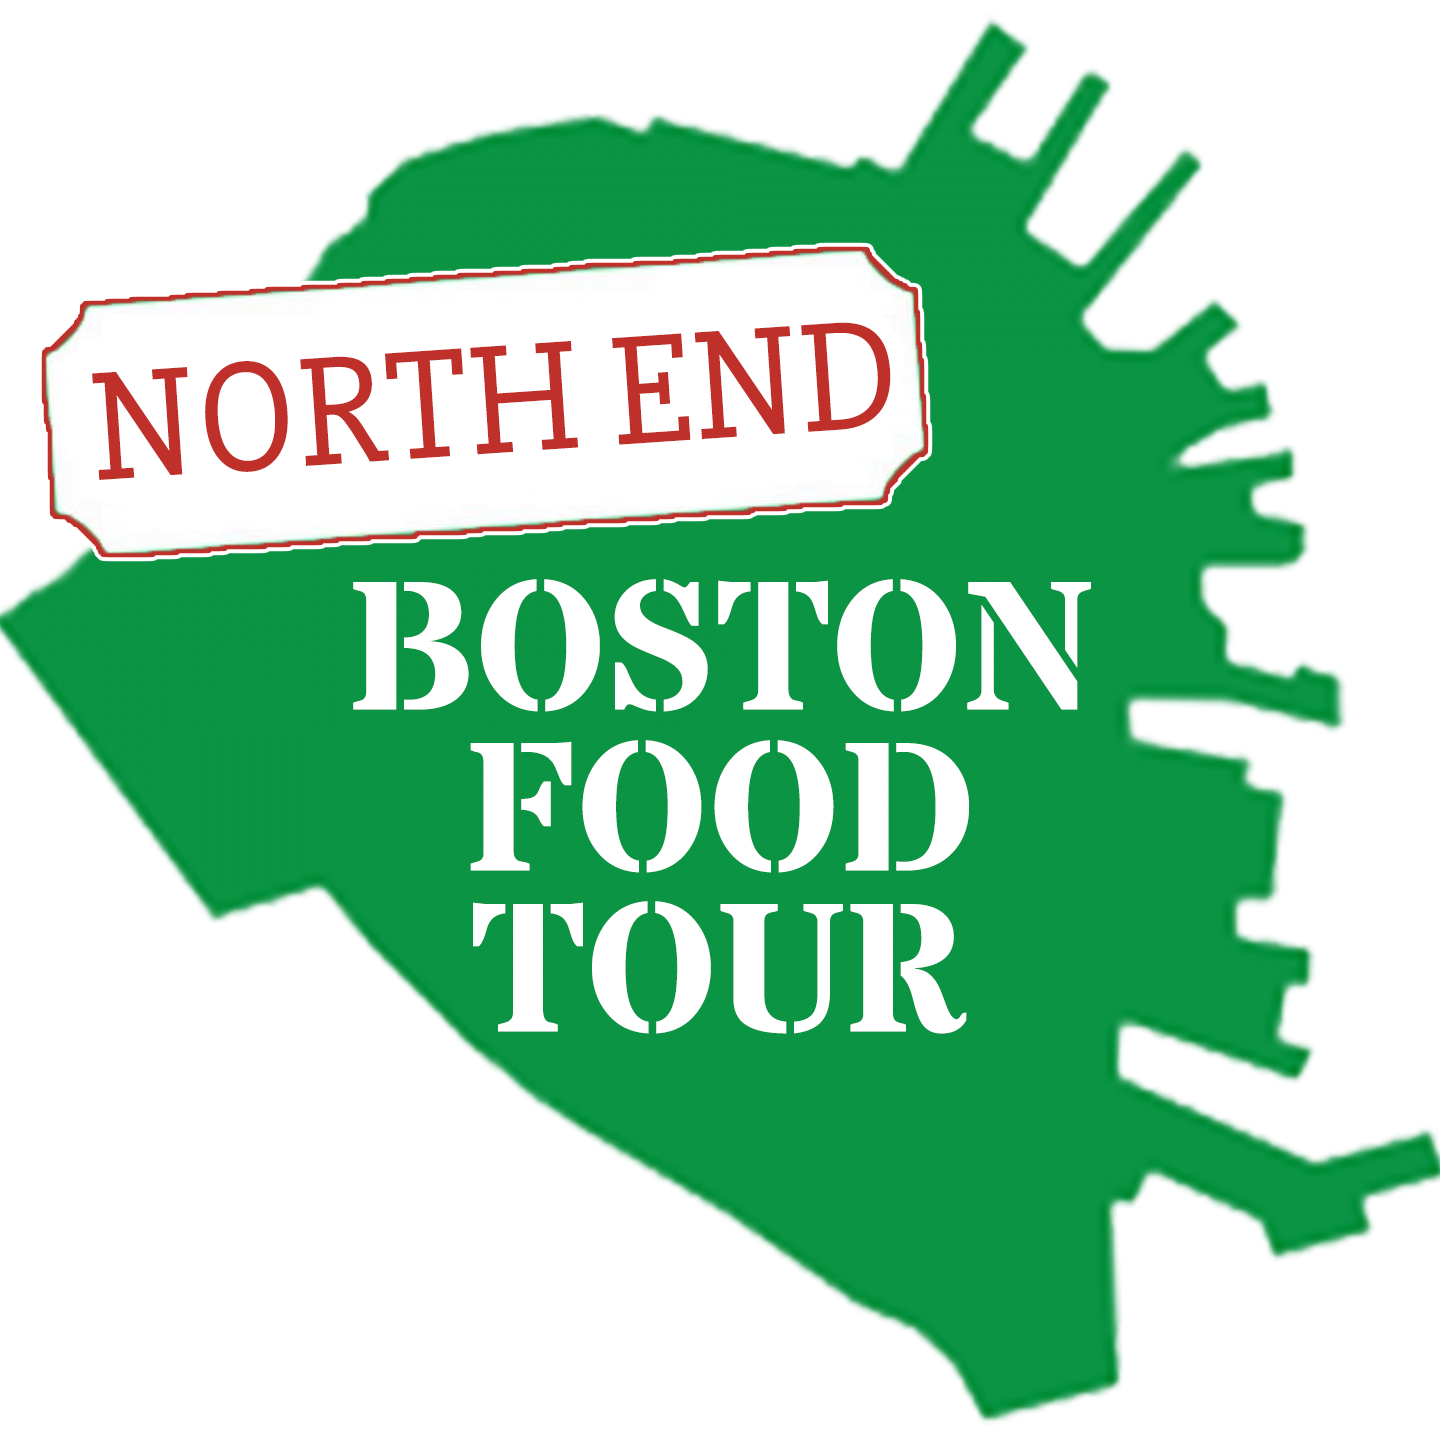 North End Boston Food Tour logo